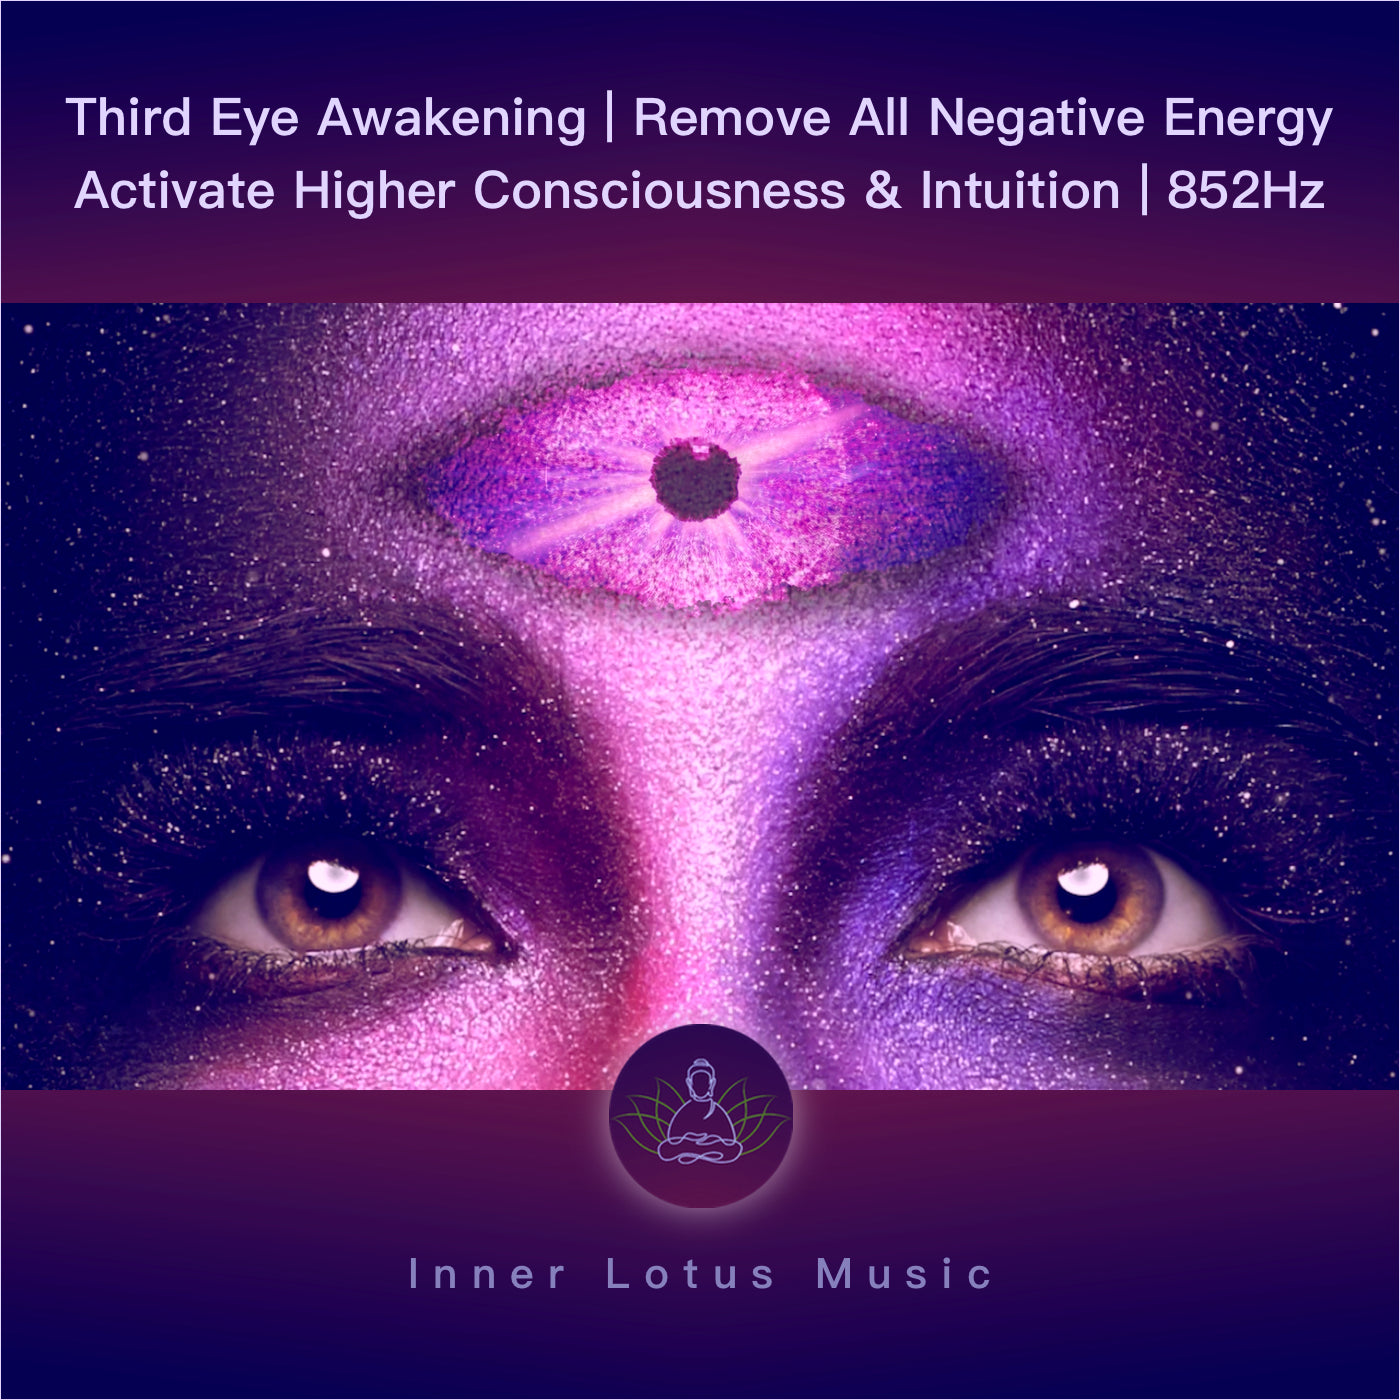 Eveille Ton 3ème Oeil | Élimine Toute Énergie Négative | Active Intuition & Conscience Supérieure